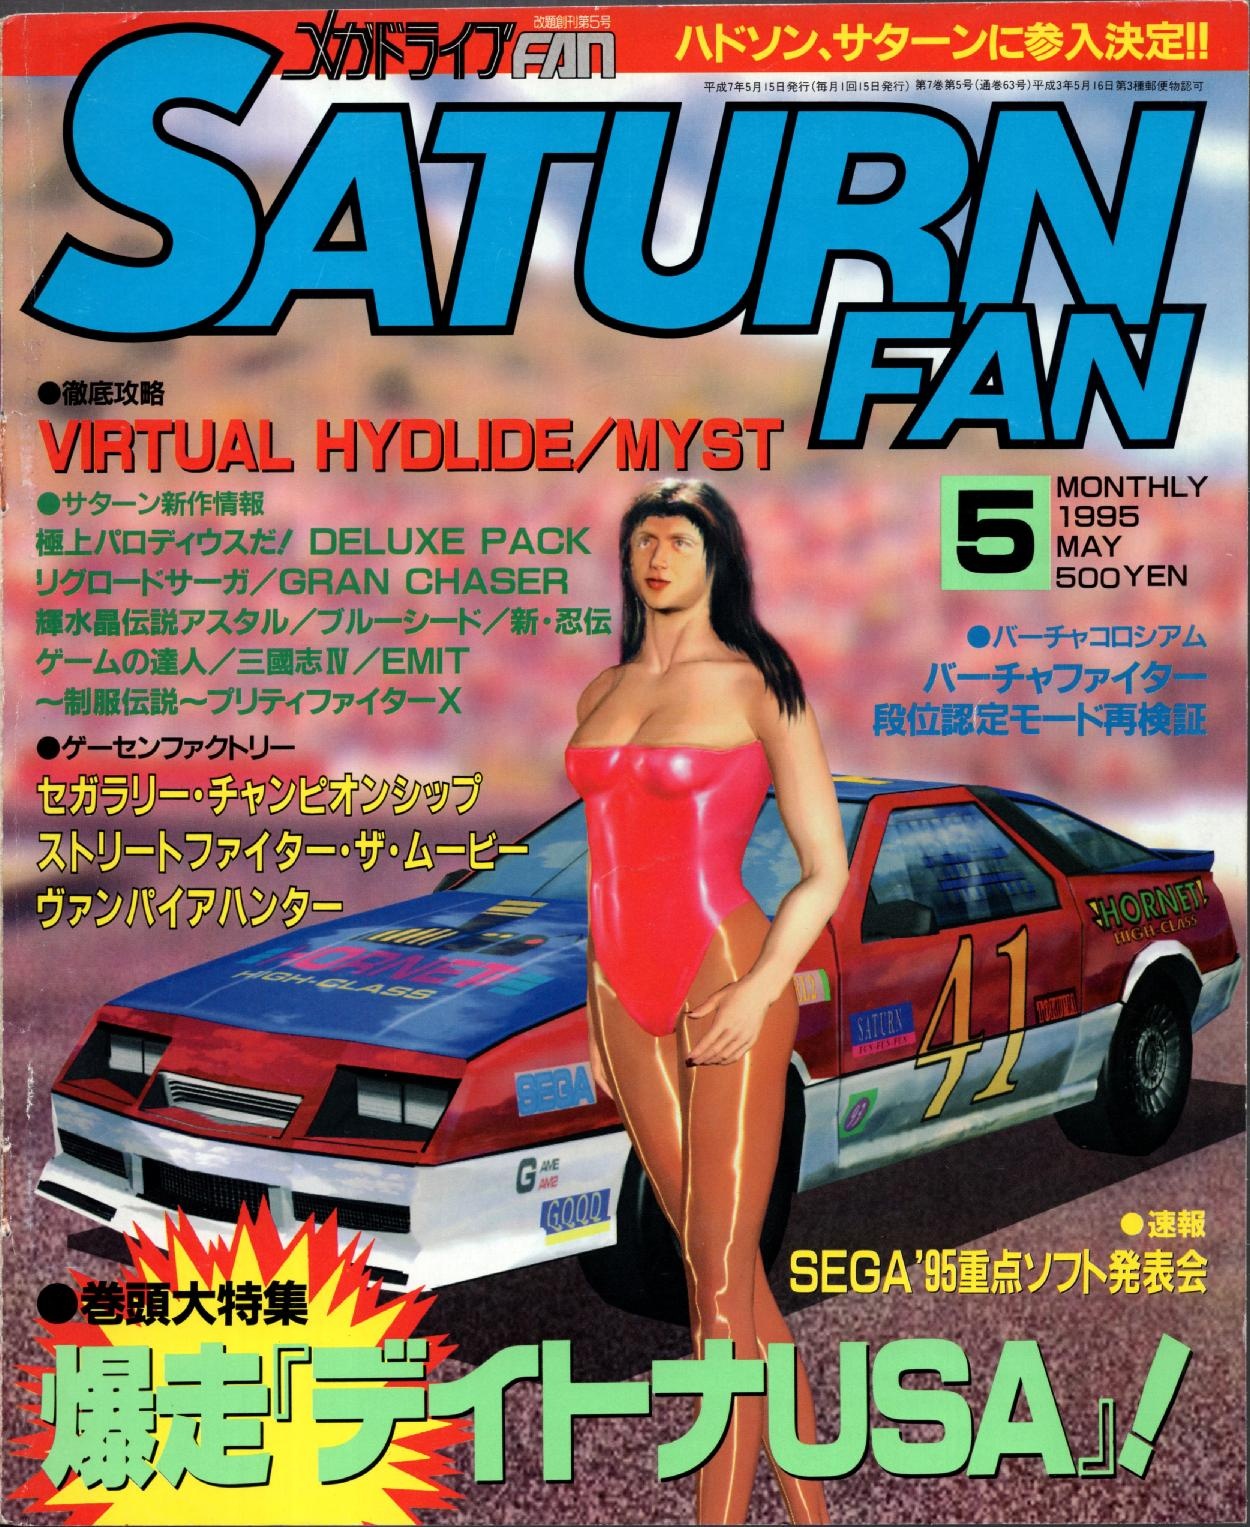 SaturnFan JP 1995-05 19950515.pdf